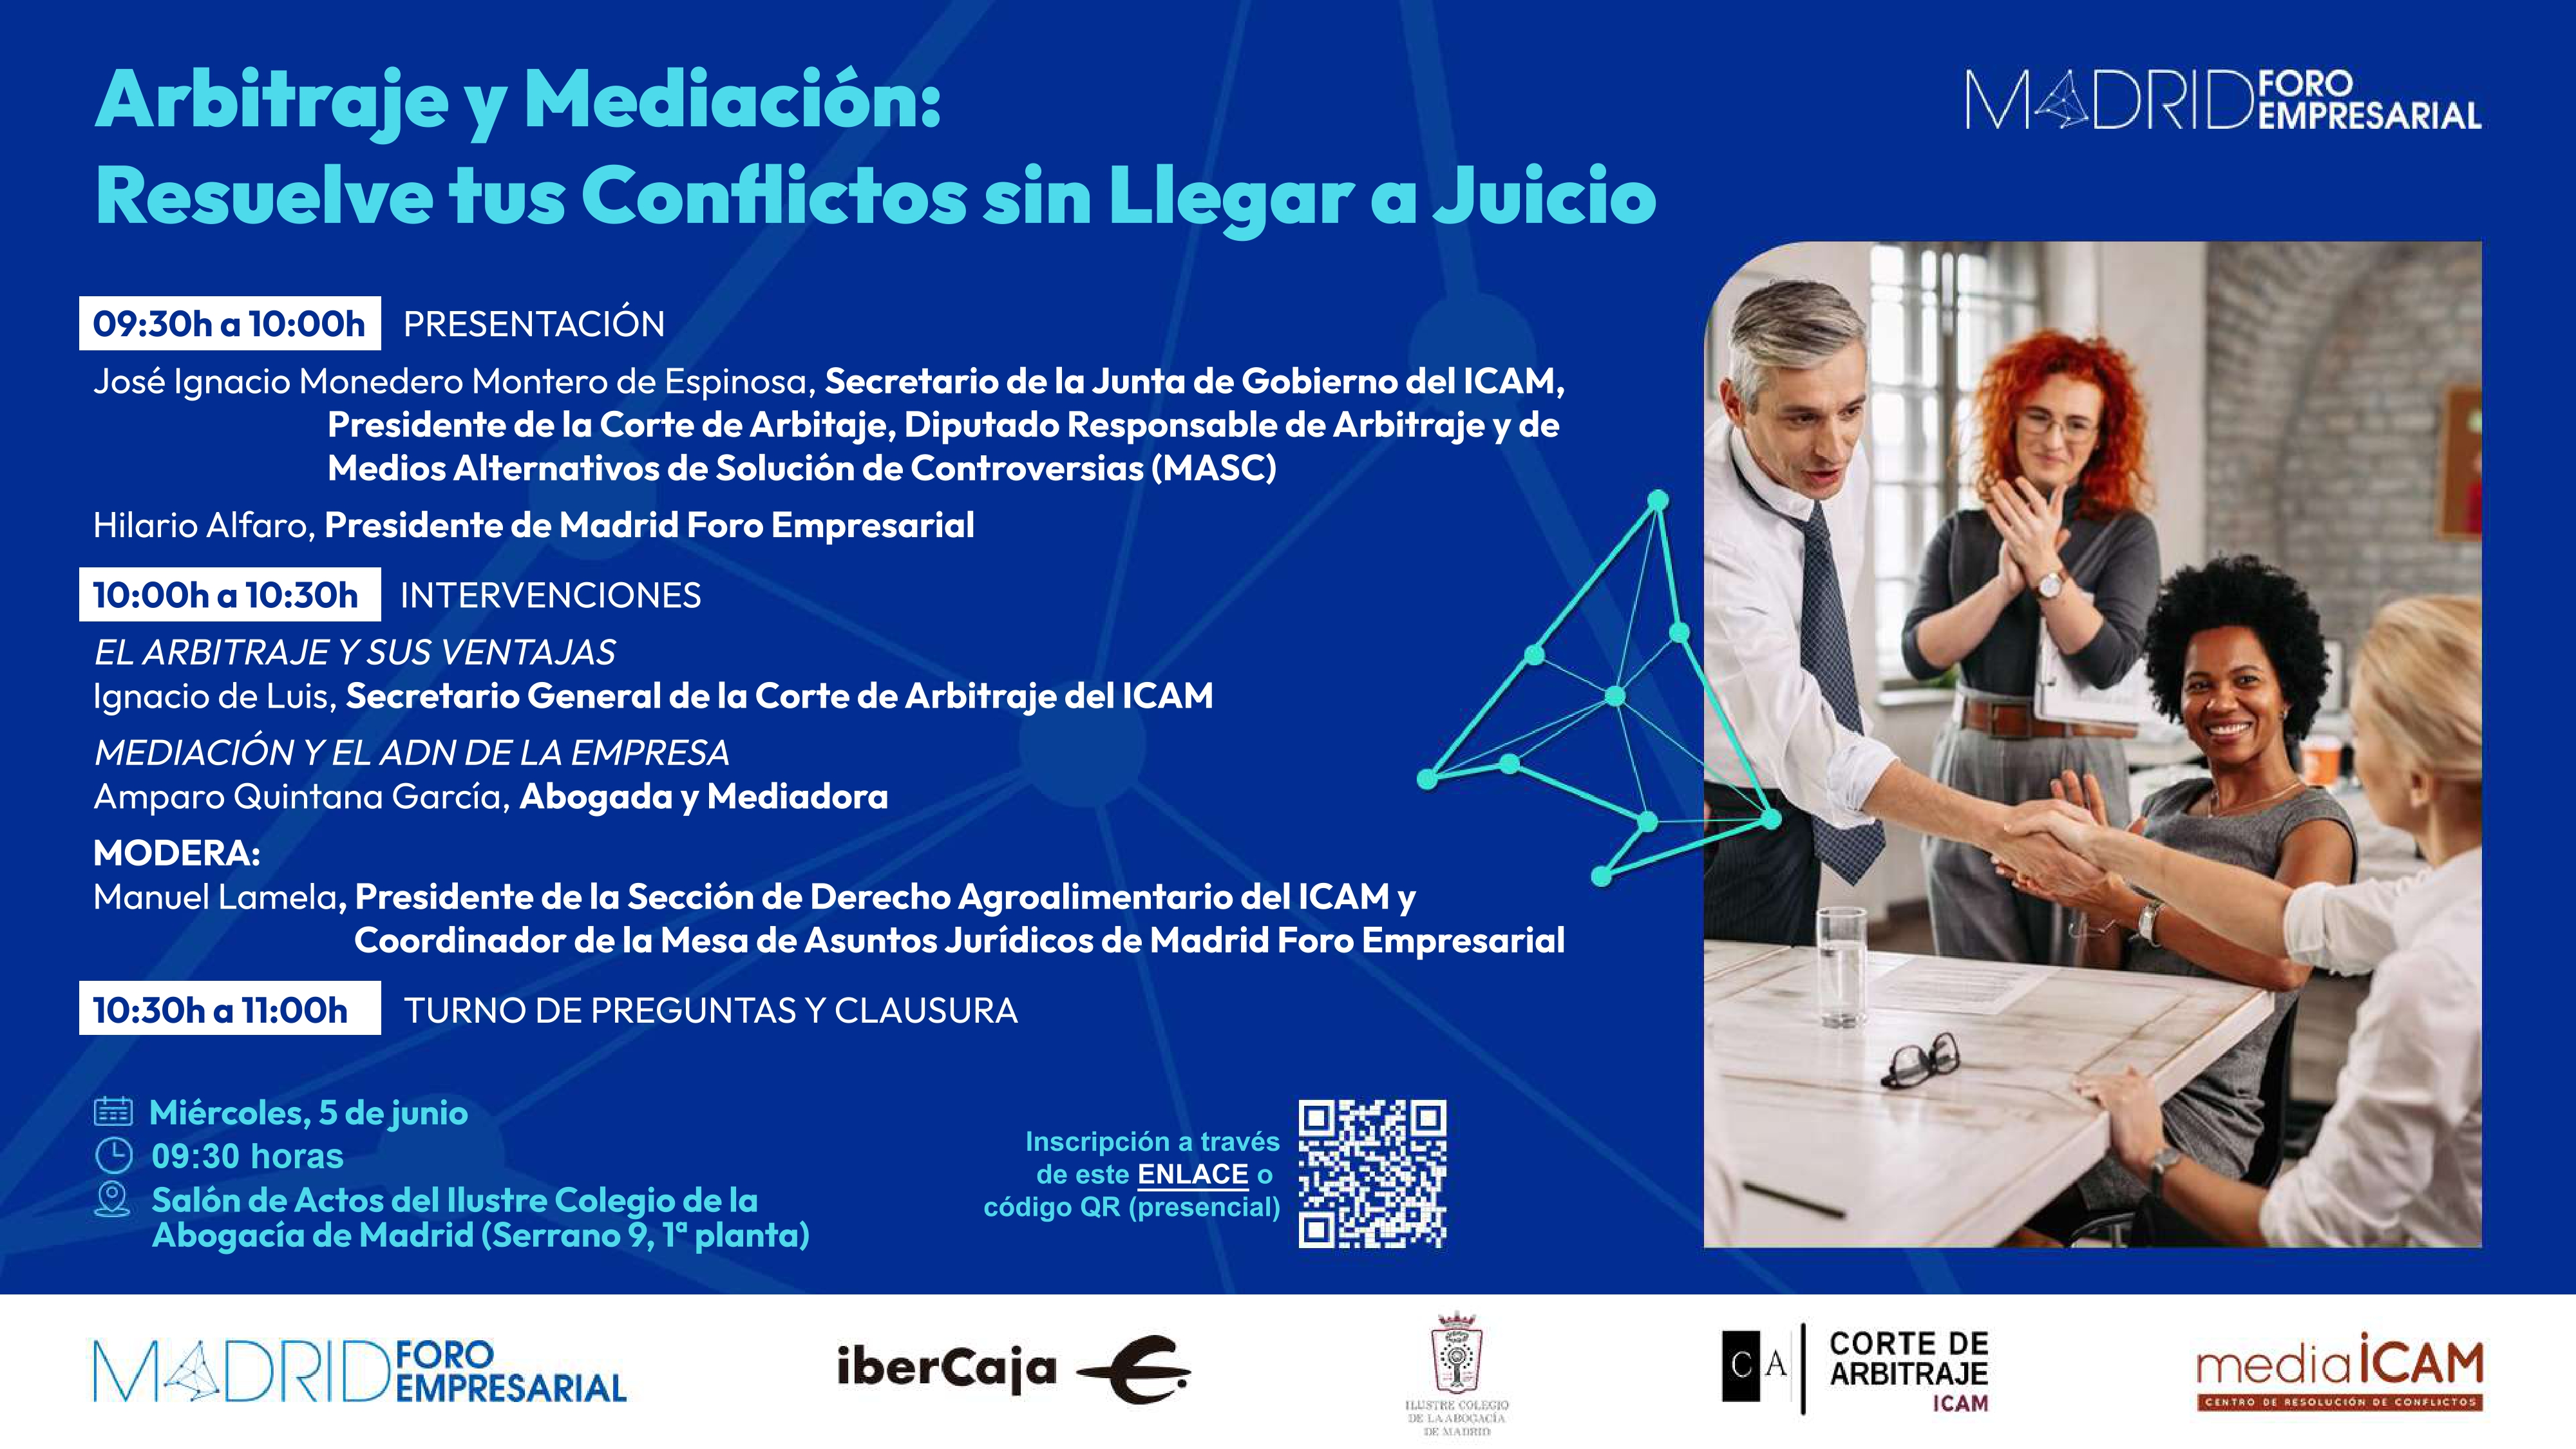 El día 5 de junio mediaICAM y la Corte de Arbitraje ofrecerán una sesión divulgativa sobre arbitraje y mediación a los socios de Madrid Foro Empresarial